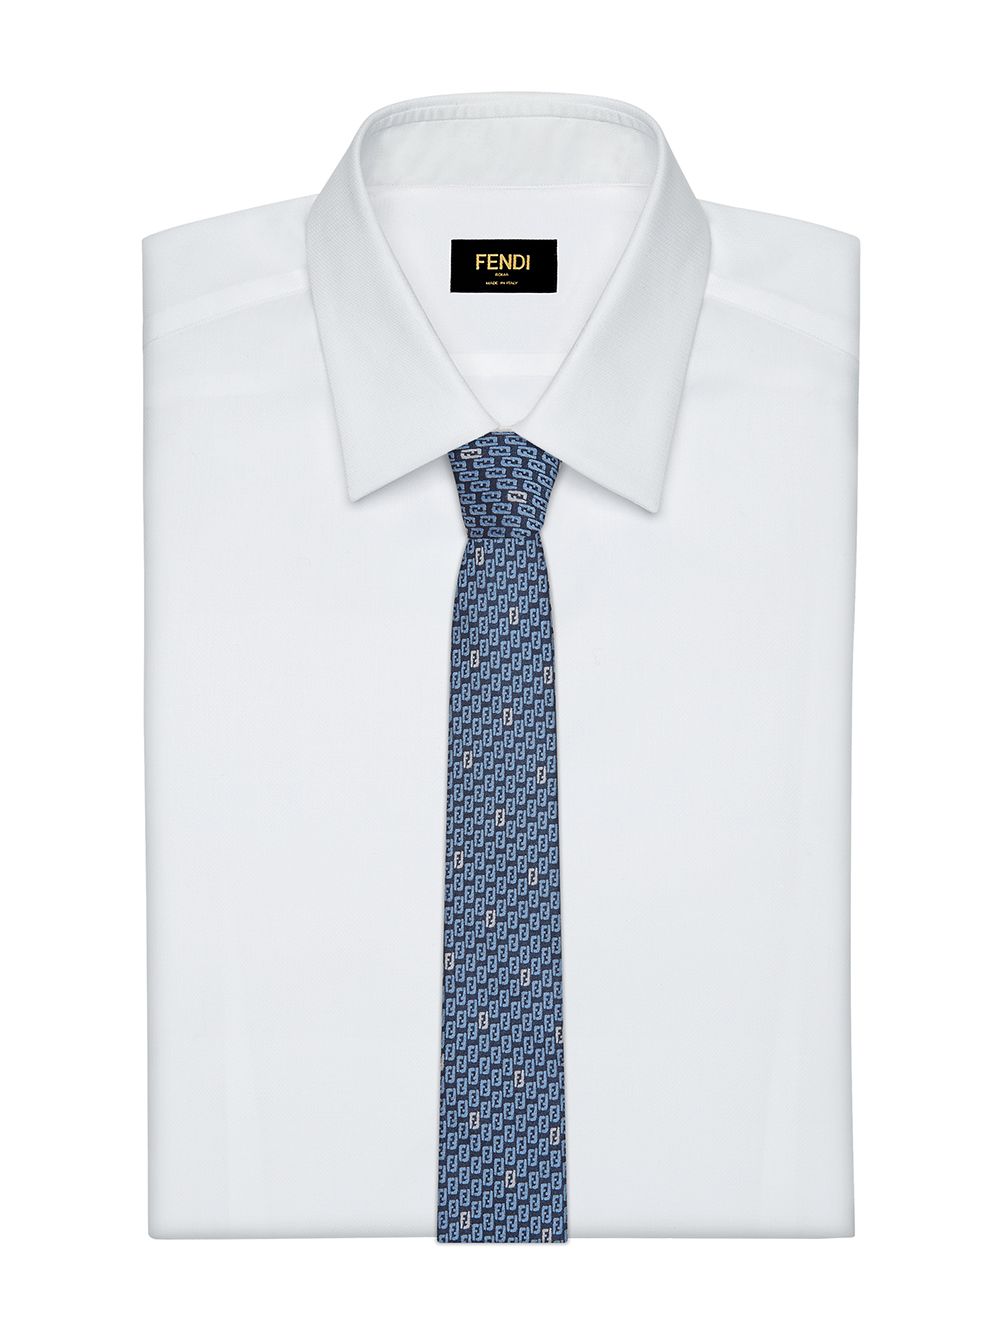 фото Fendi галстук cravatta